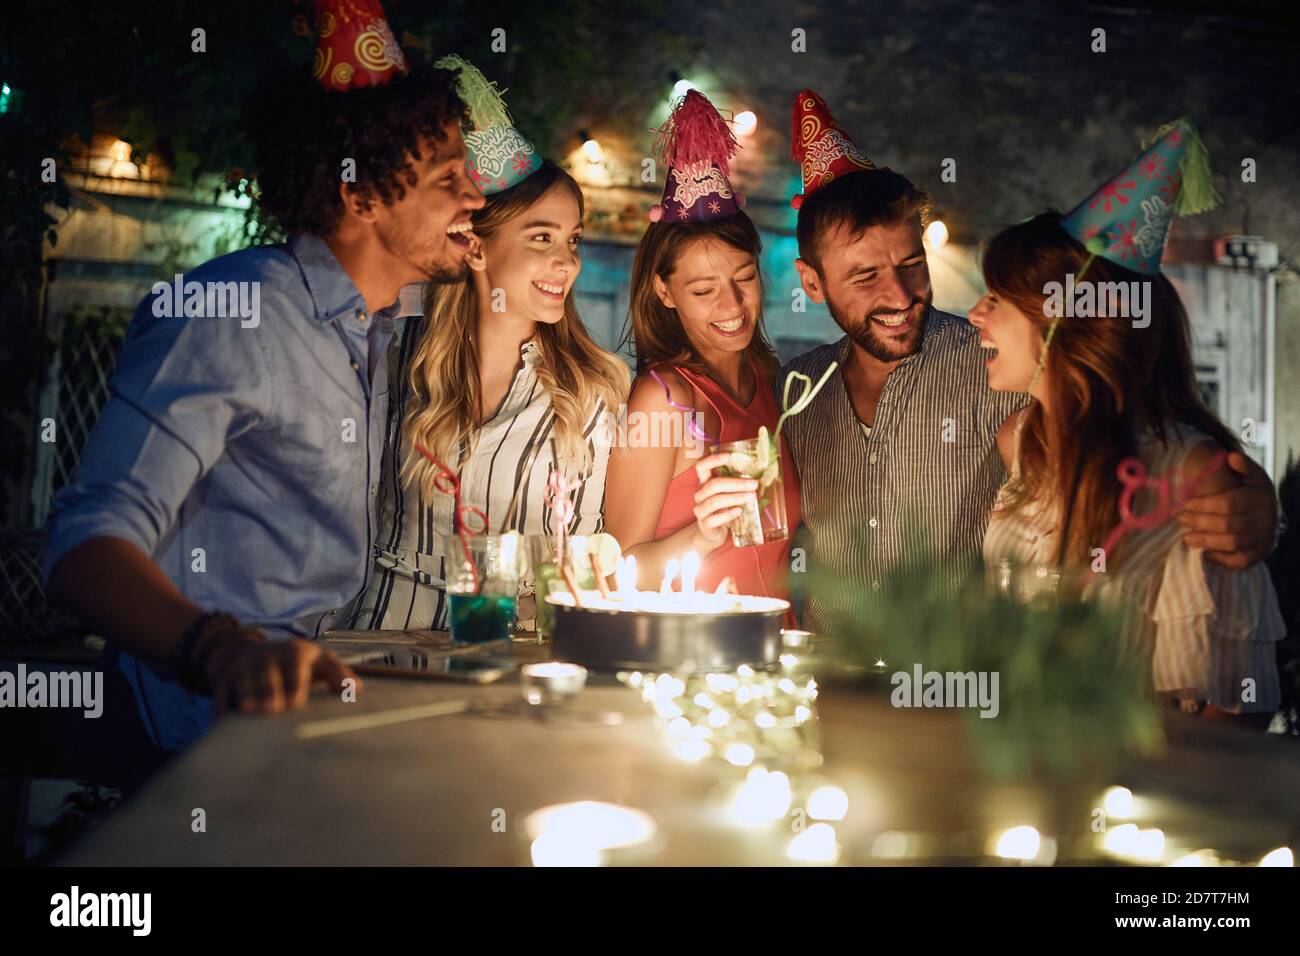 Der Geburtstagsfeier genießen mit Freunden auf Open-Air-Party an einem schönen Sommerabend. Qualität Freundschaft Zeit zusammen Stockfoto